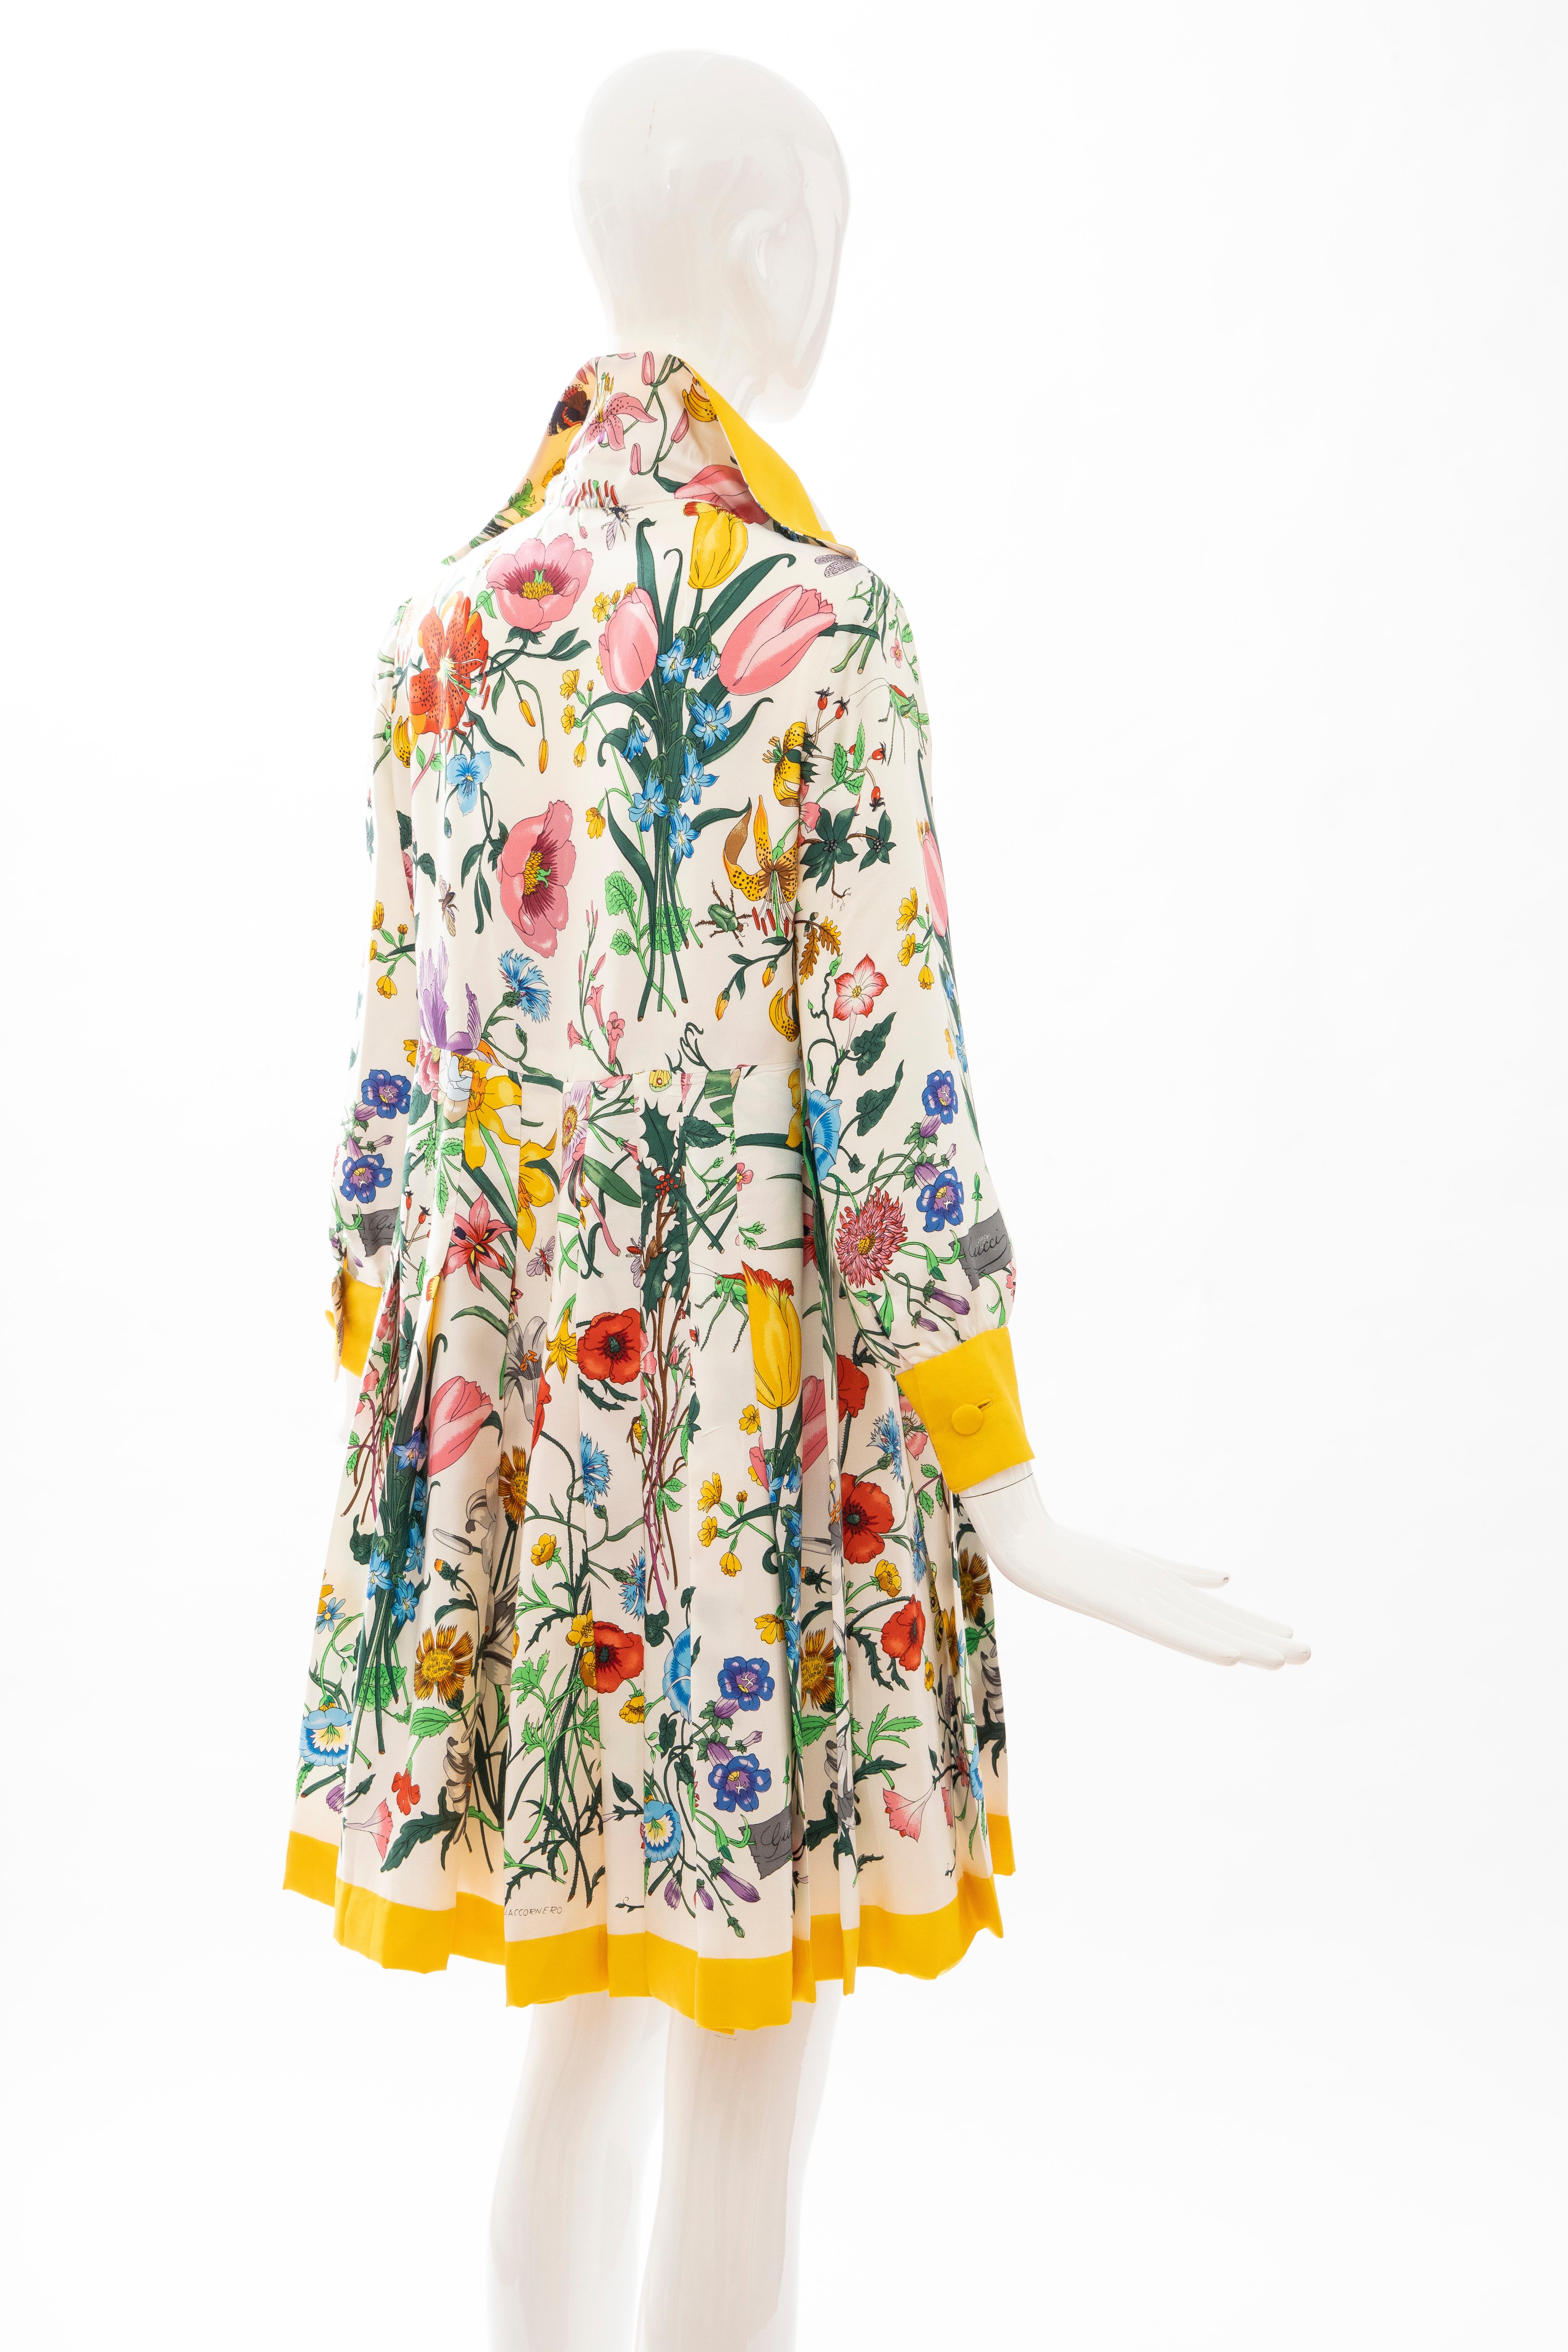 Women's Gucci Vittorio Accornero Flora Fauna Screen Printed Silk Dress, Circa: 1970's